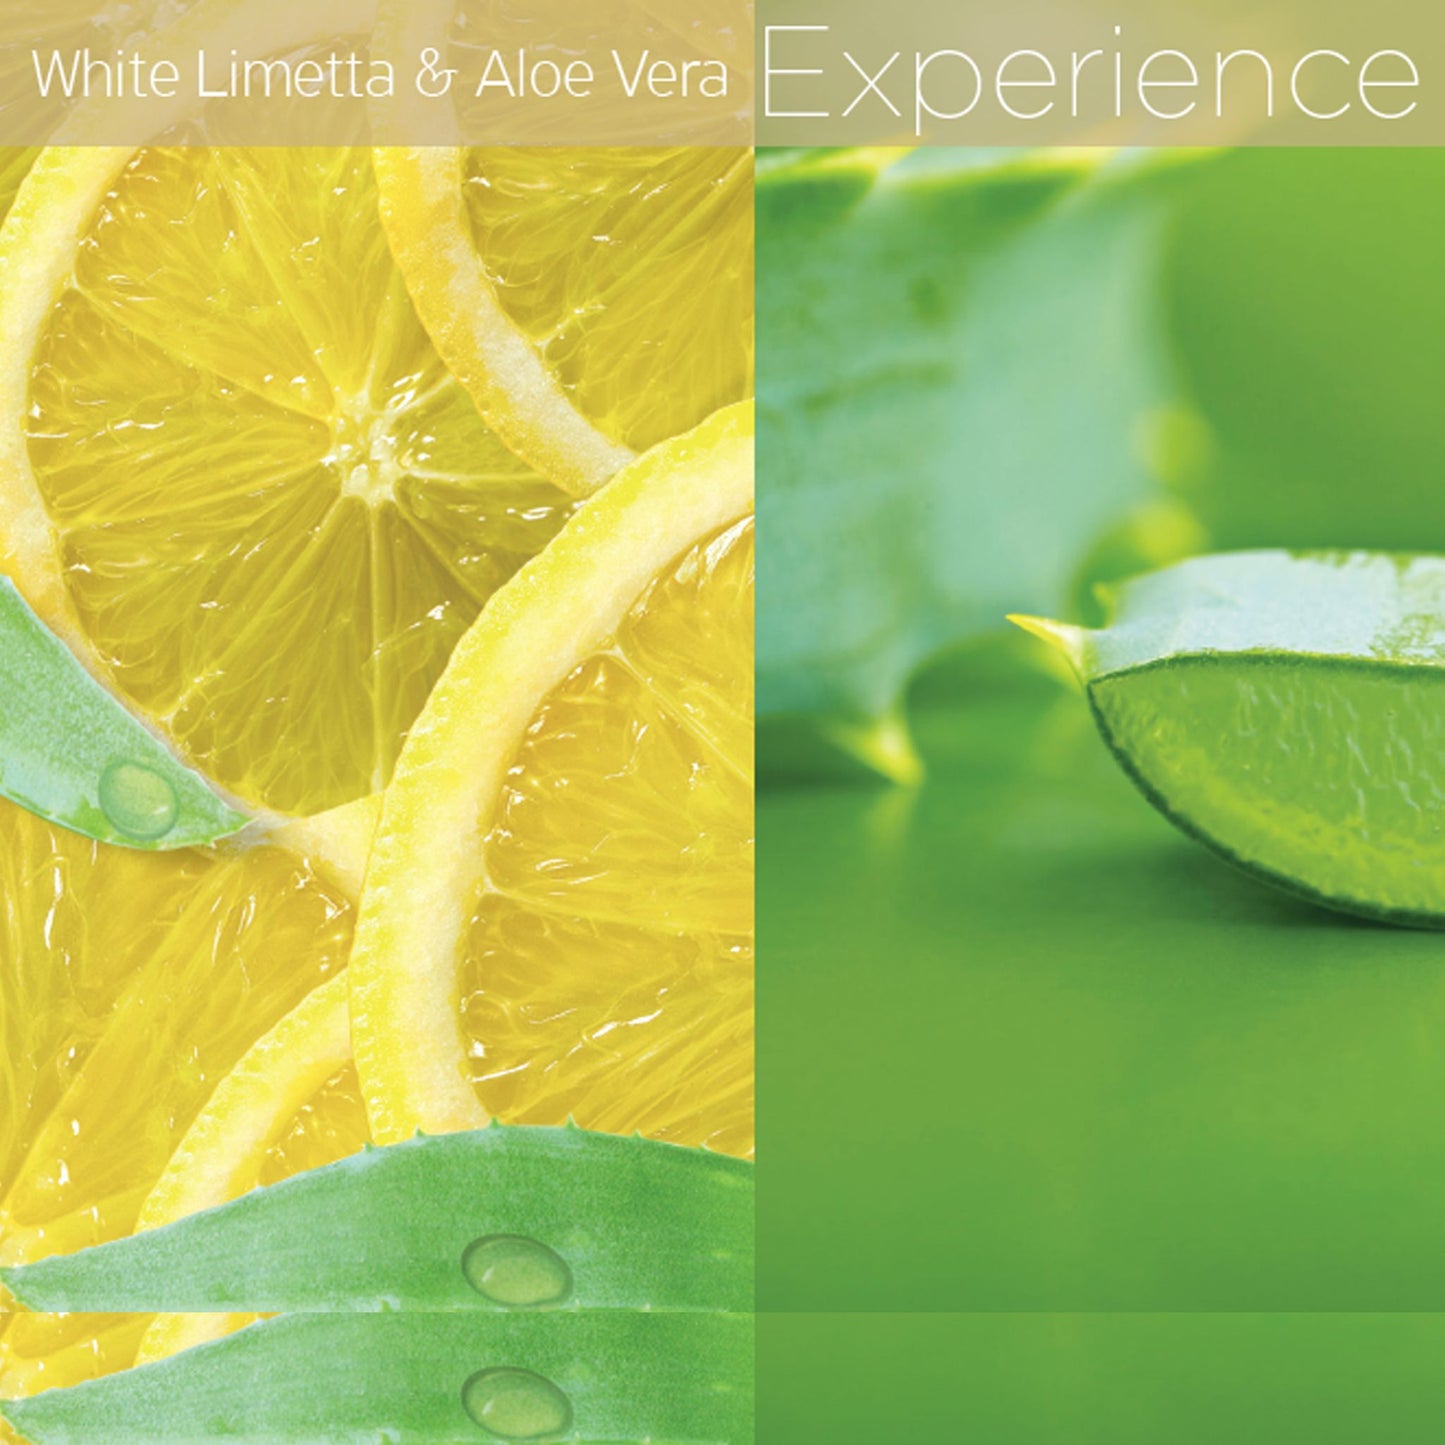 White Limetta & Aloe Vera Scentual Soak